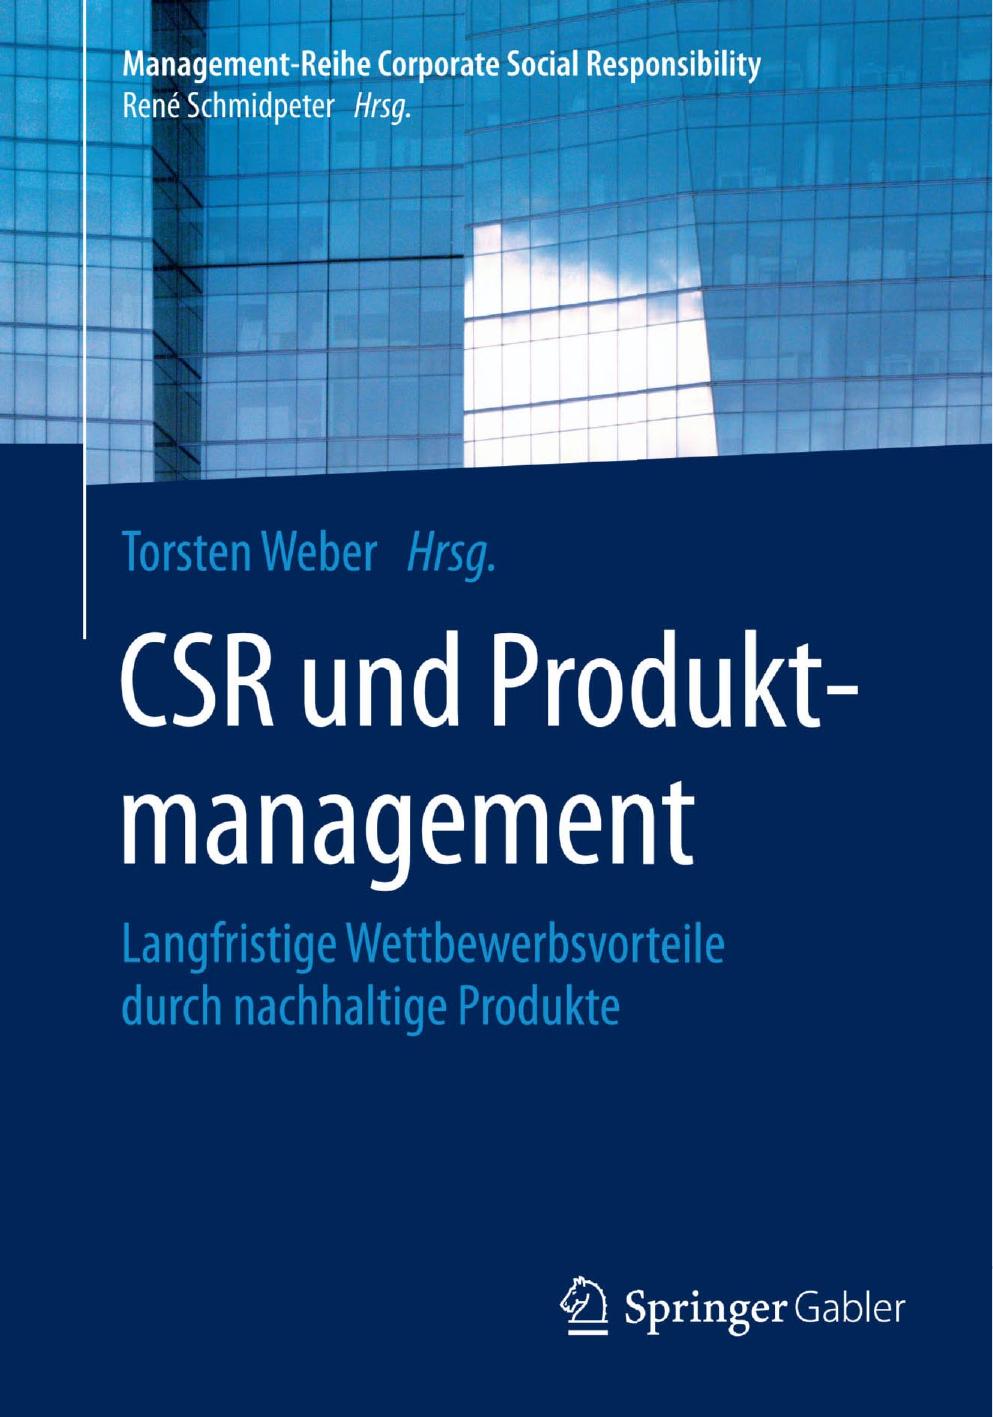 CSR und Produktmanagement: Langfristige Wettbewerbsvorteile durch nachhaltige Produkte